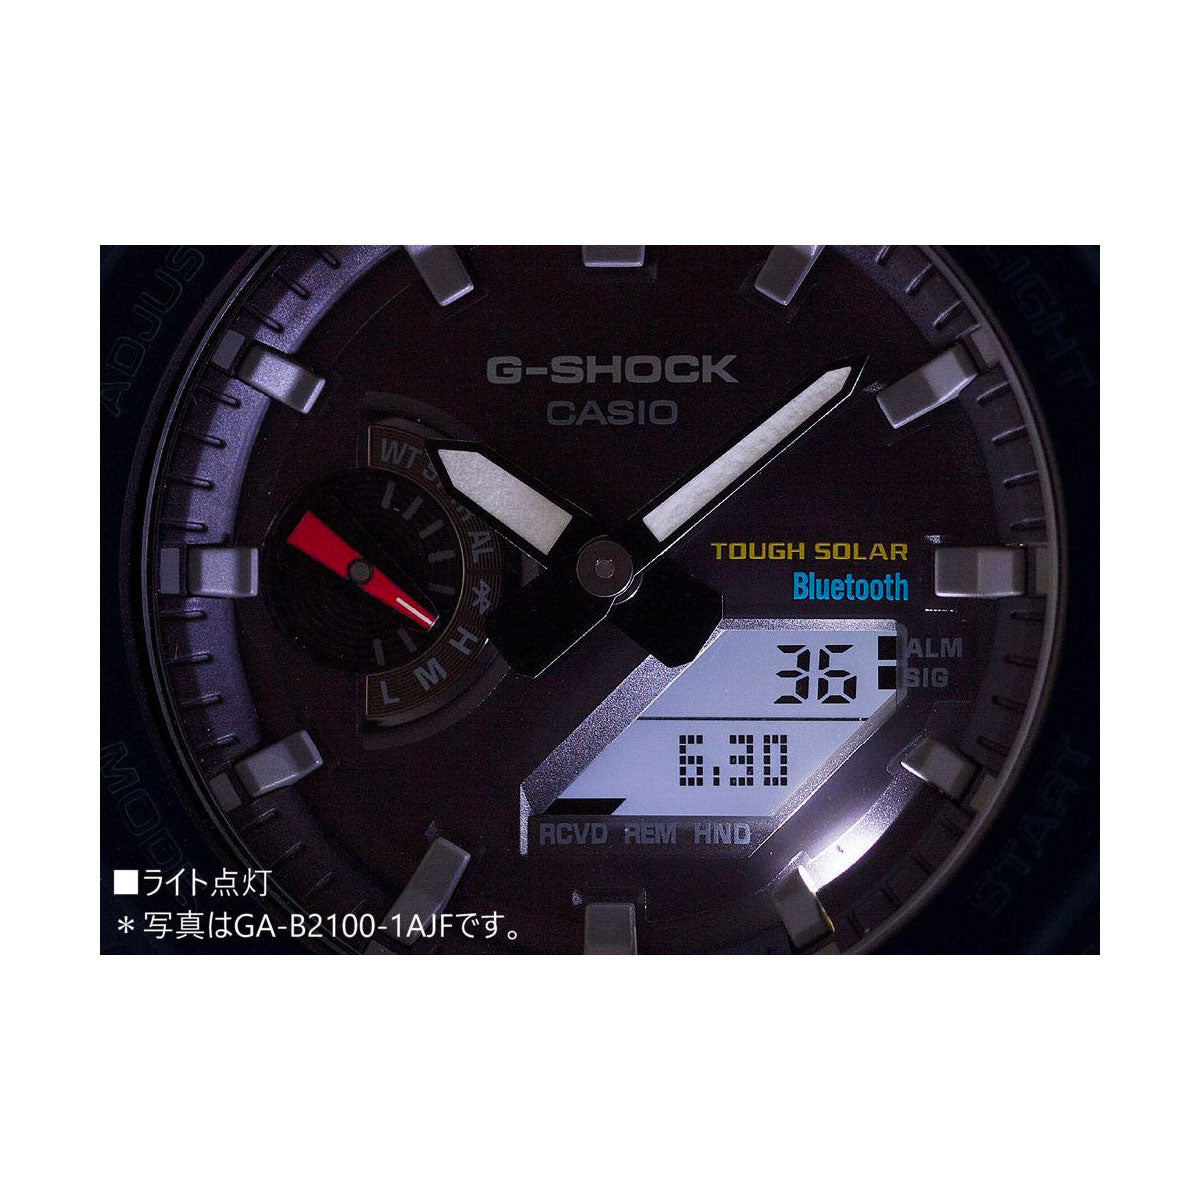 G-SHOCK ソーラー カシオ Gショック CASIO 腕時計 メンズ GA-B2100-1AJF タフソーラー スマートフォンリンク オールブラック